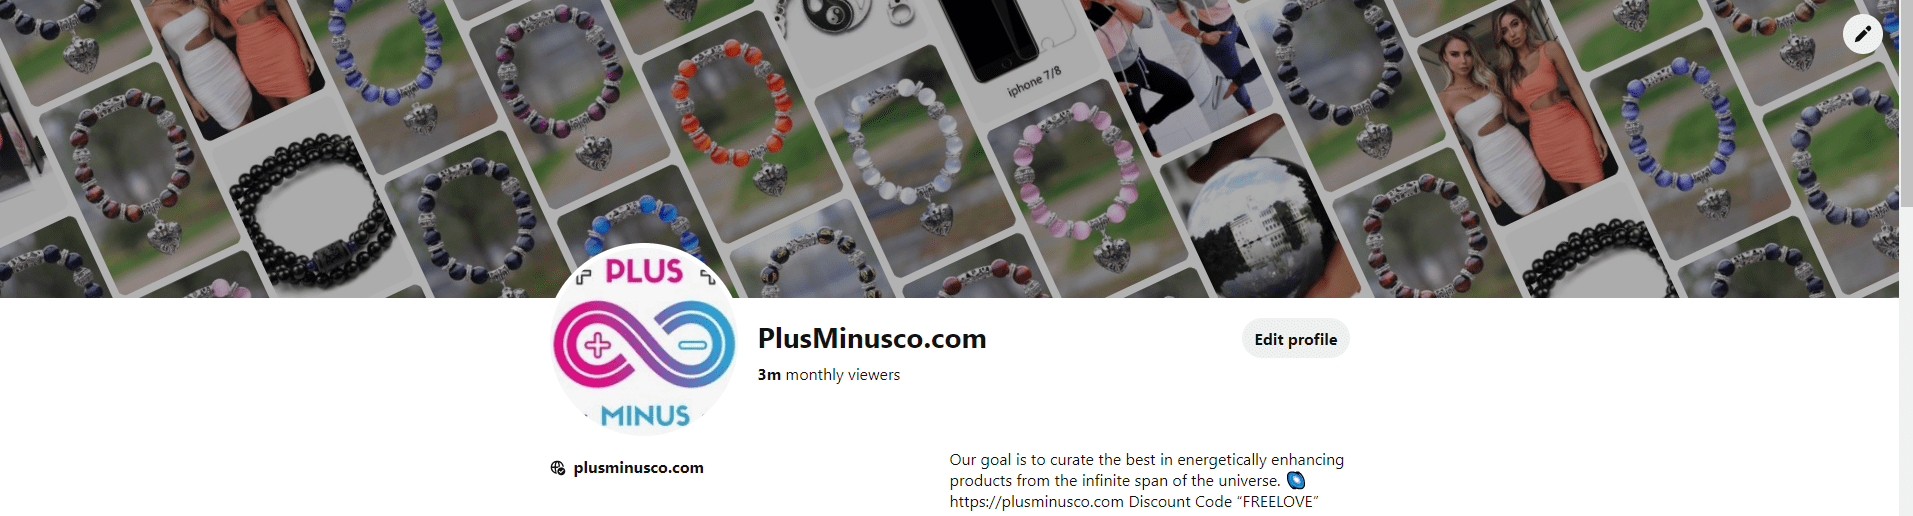 Armbanden - plusminusco.com